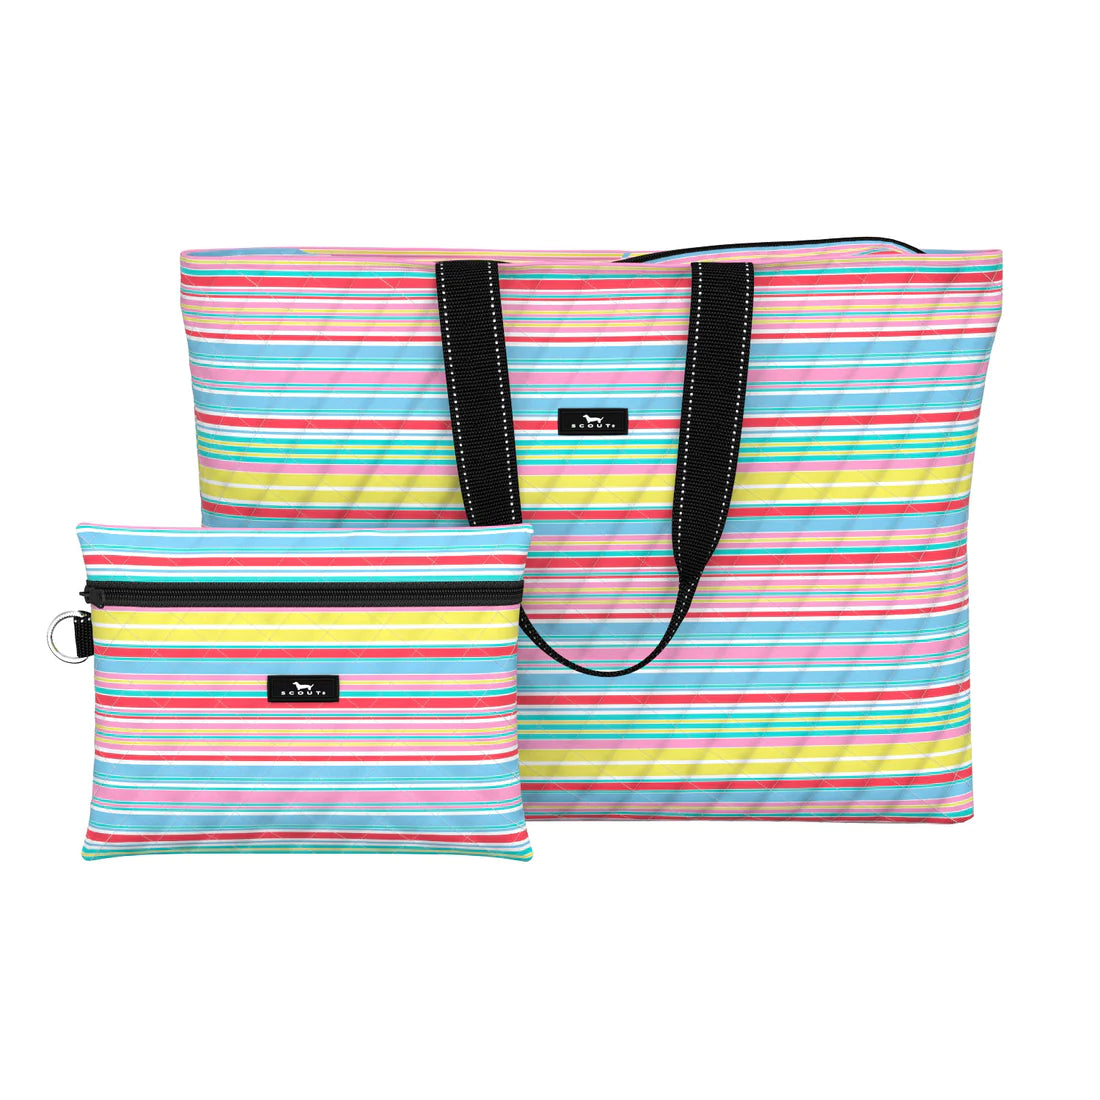 Plus 1 Foldable Travel Bag | Ripe Stripe